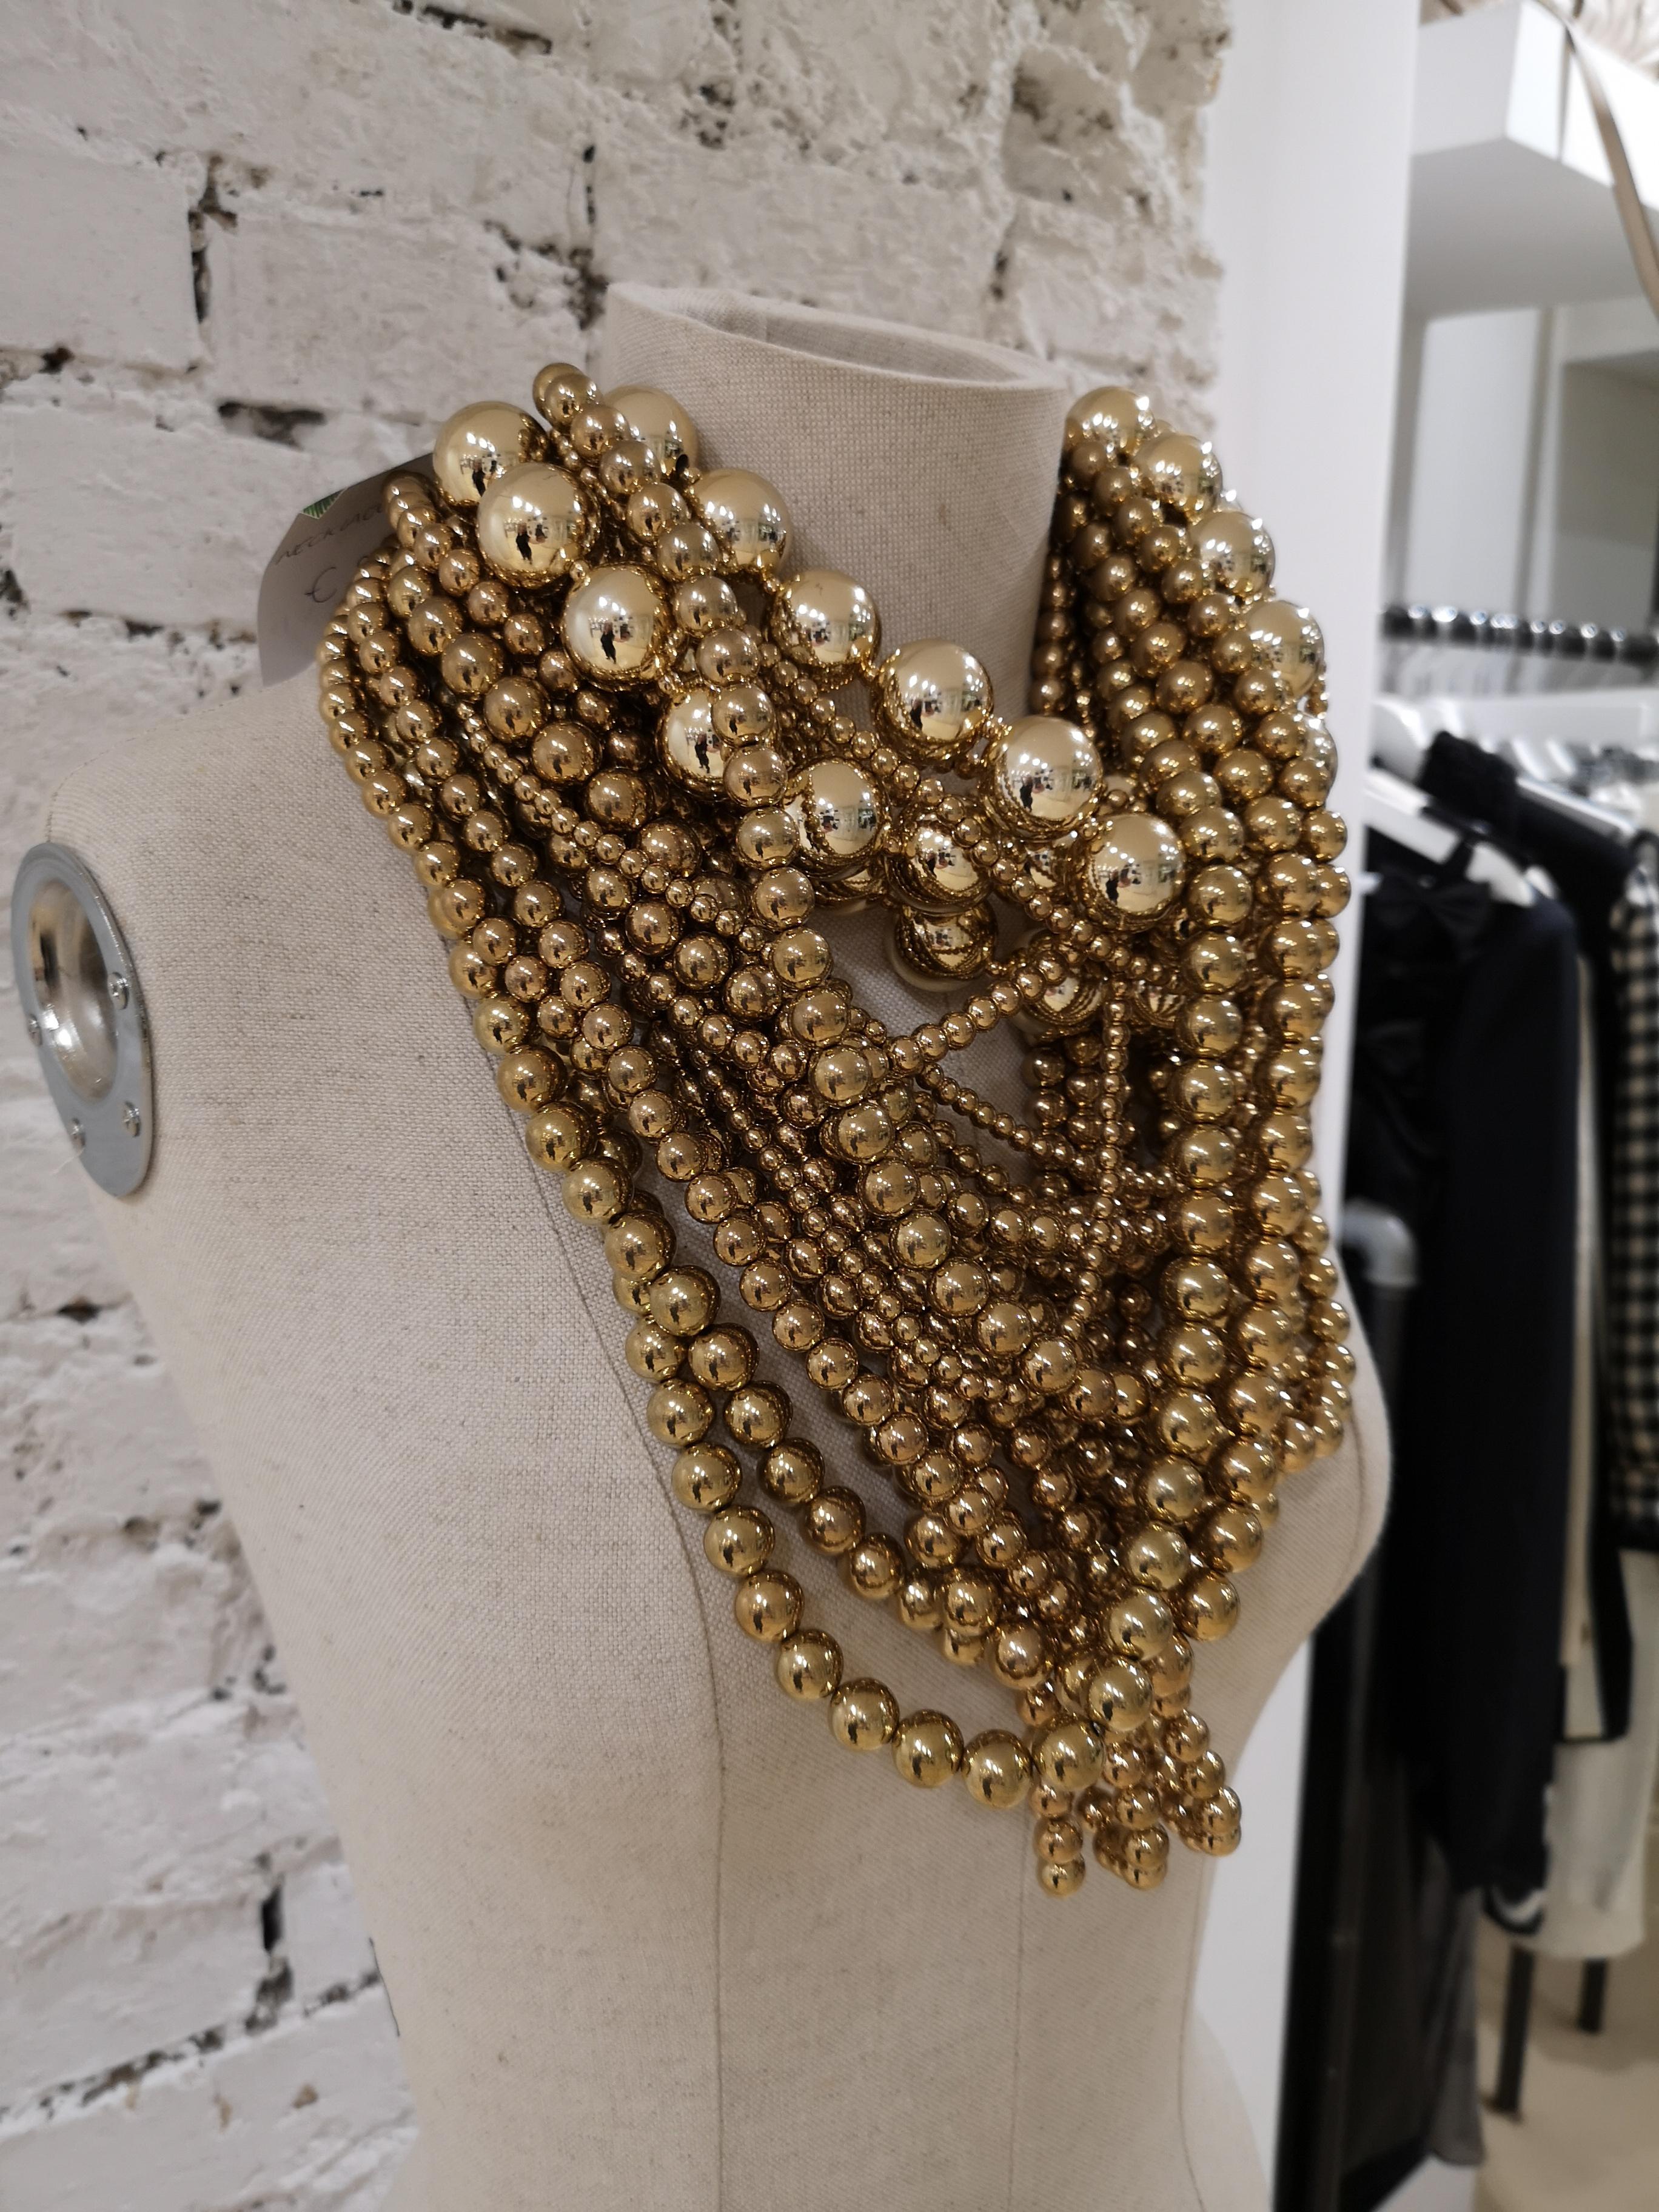 Gold tone pearls Necklace
unique necklace 
round 54cm
total lenght 30 cm